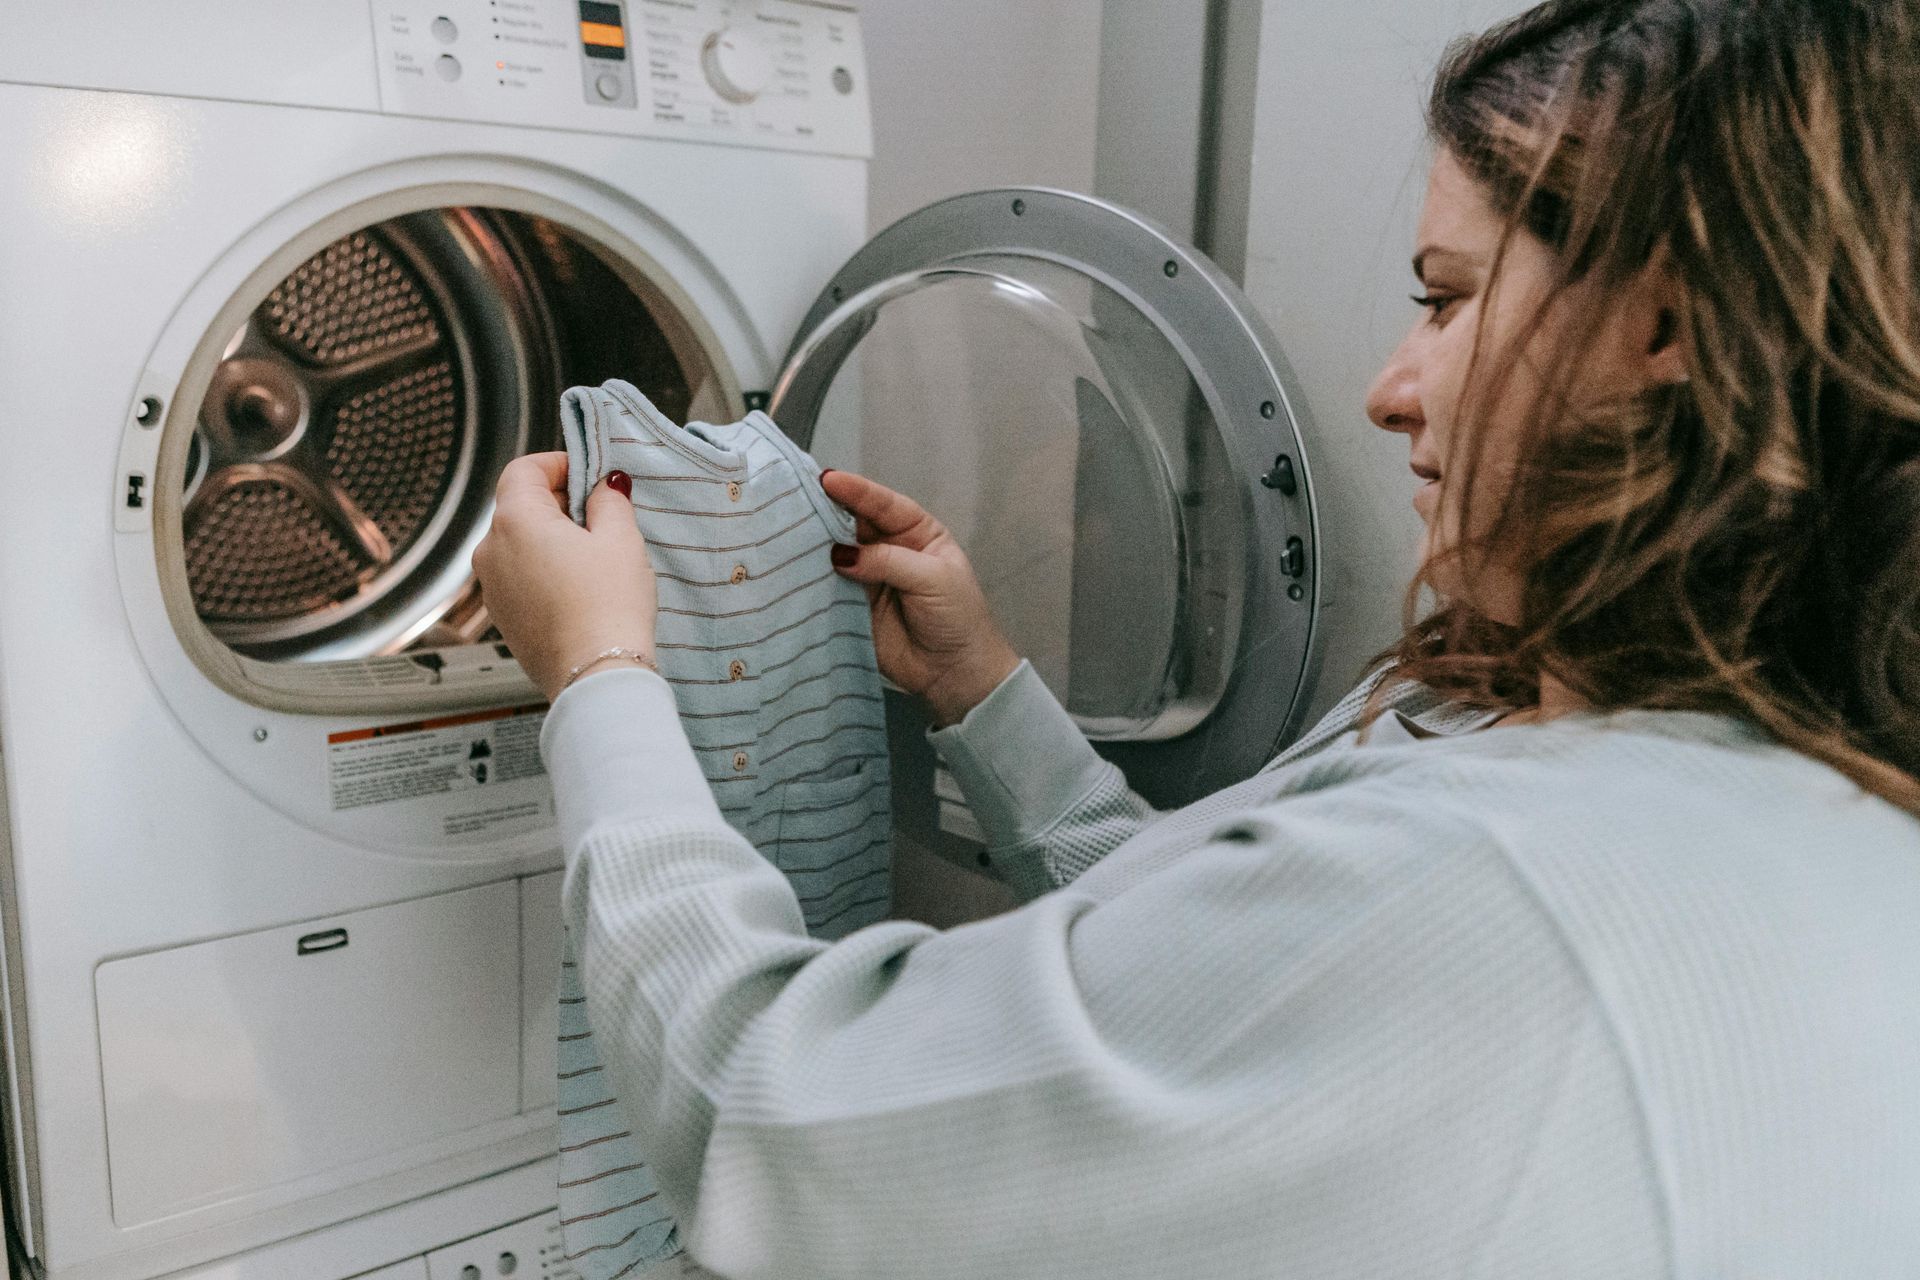 Woman loads Washing Machine